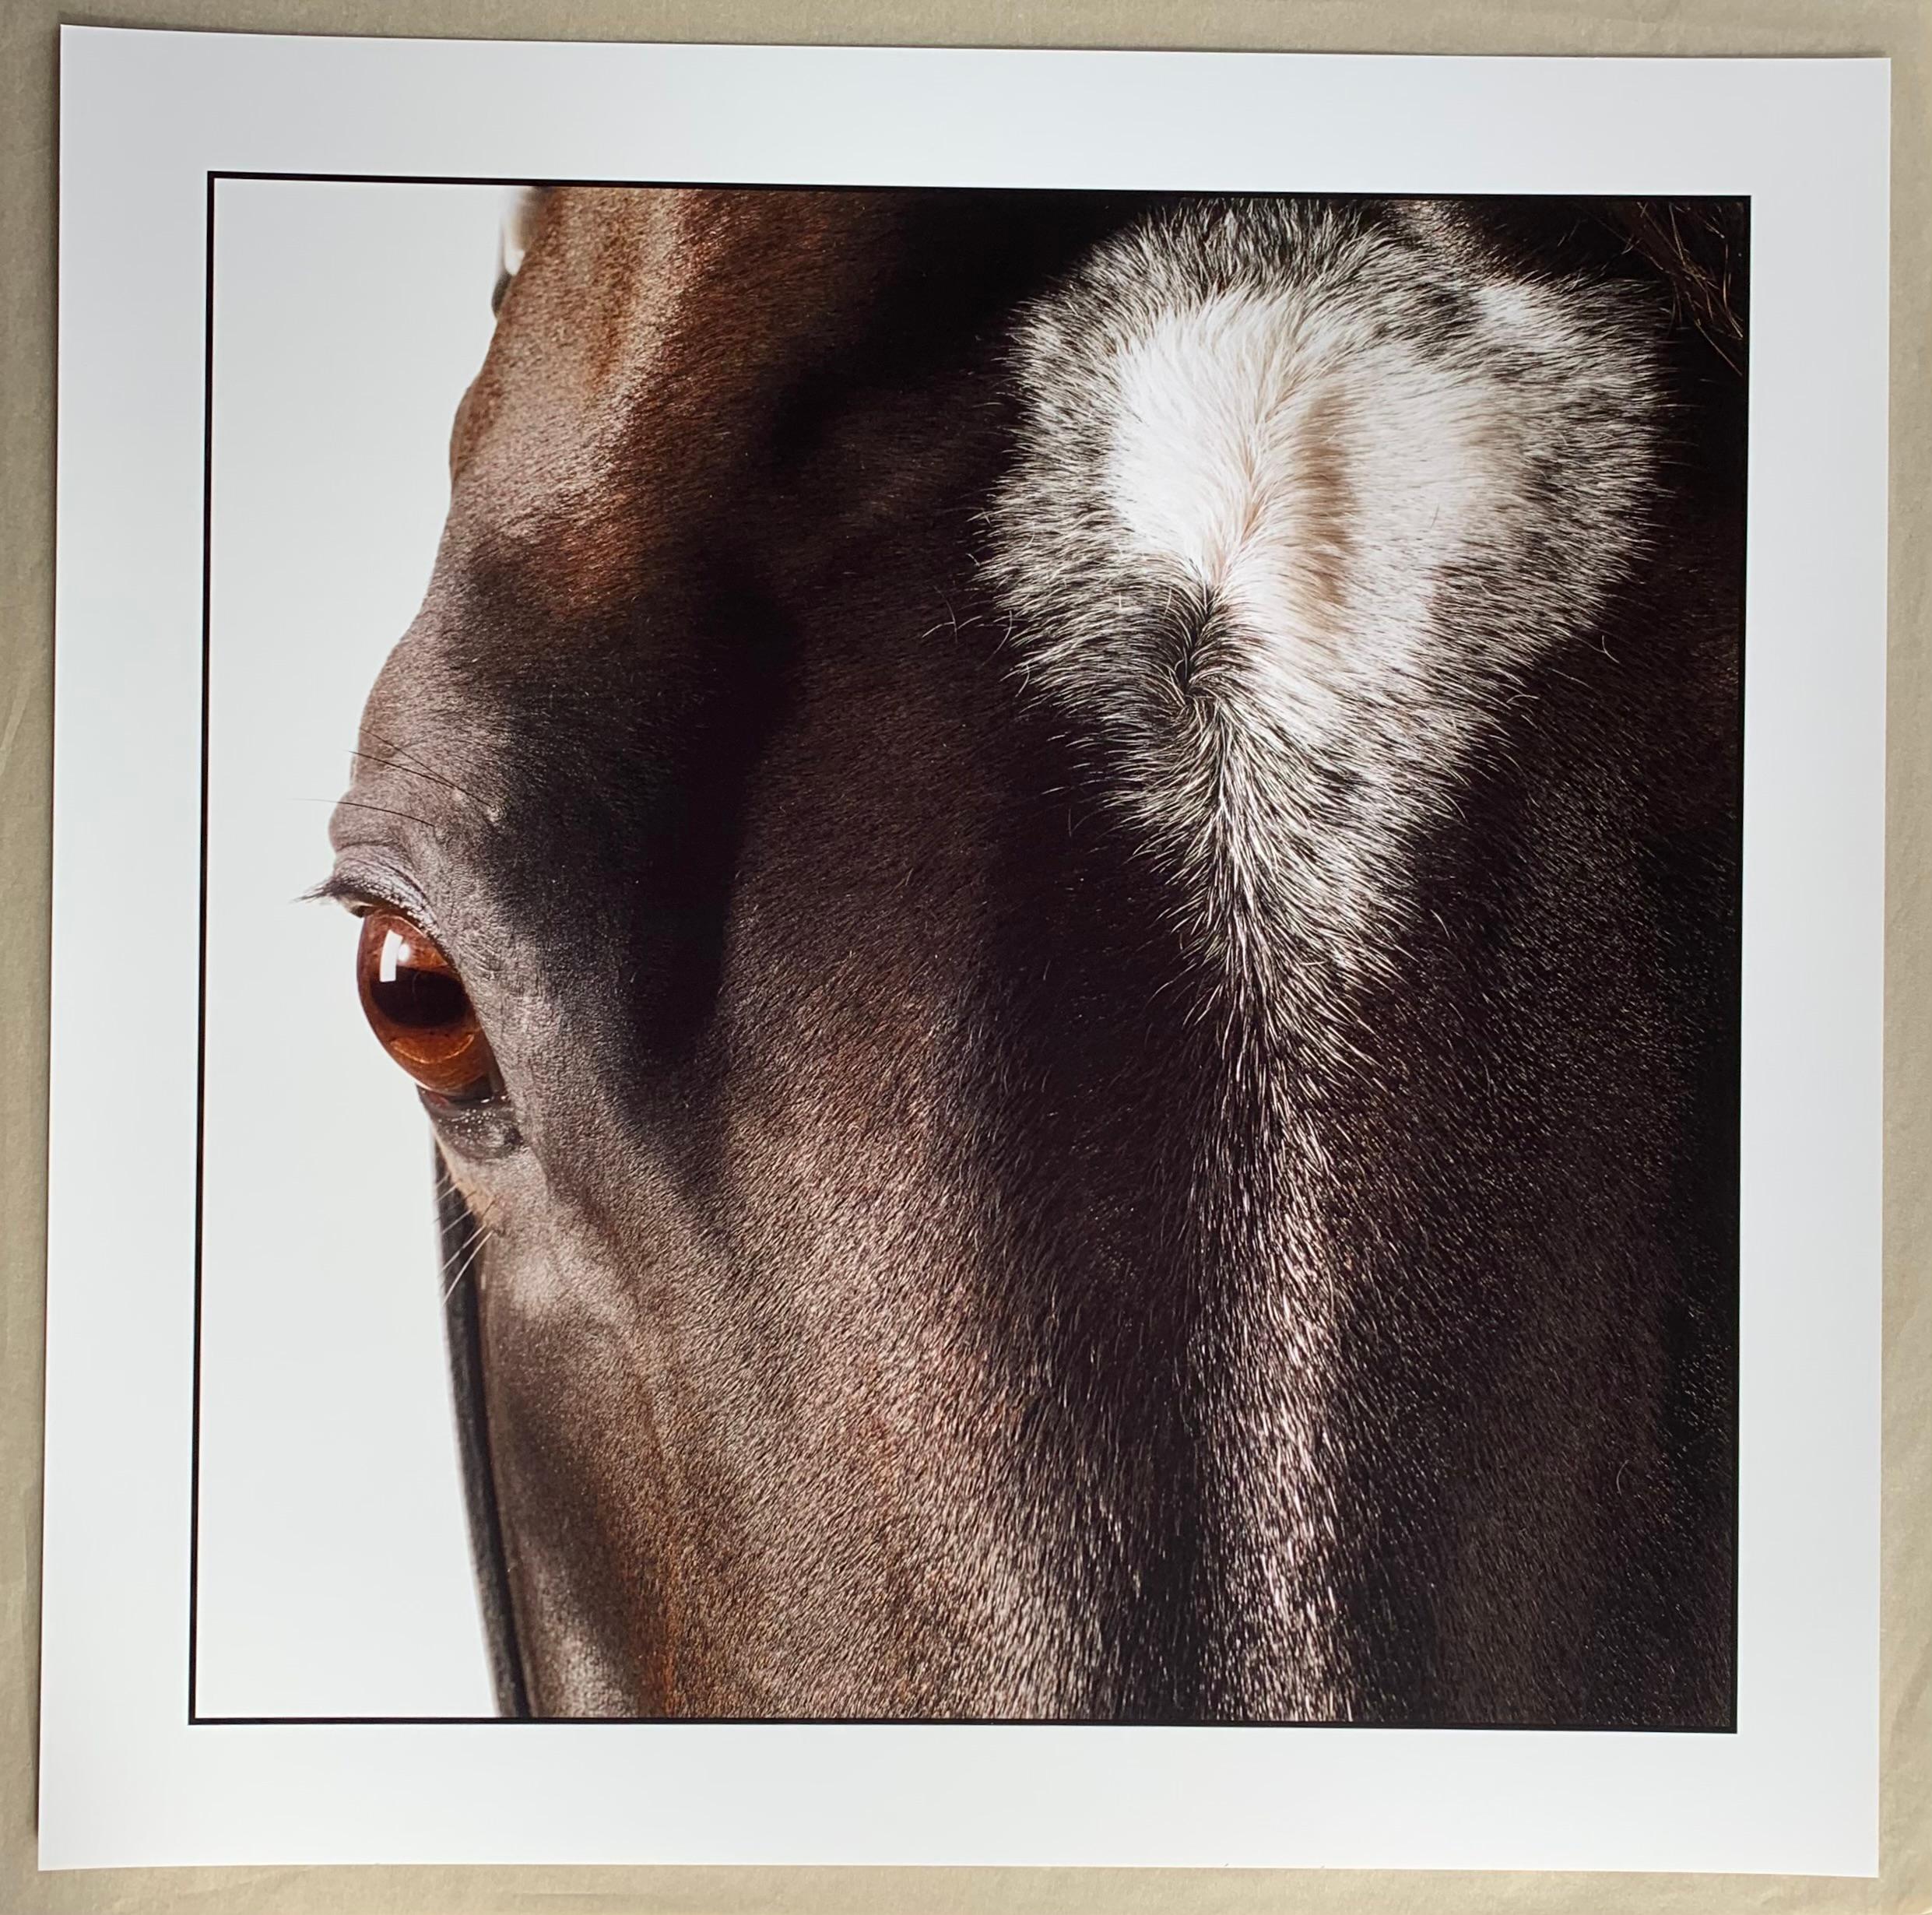 Medaglia d'Oro, Tête et œil de cheval - Portrait d'étalon non encadré Impression sur papier - Print de John Reardon